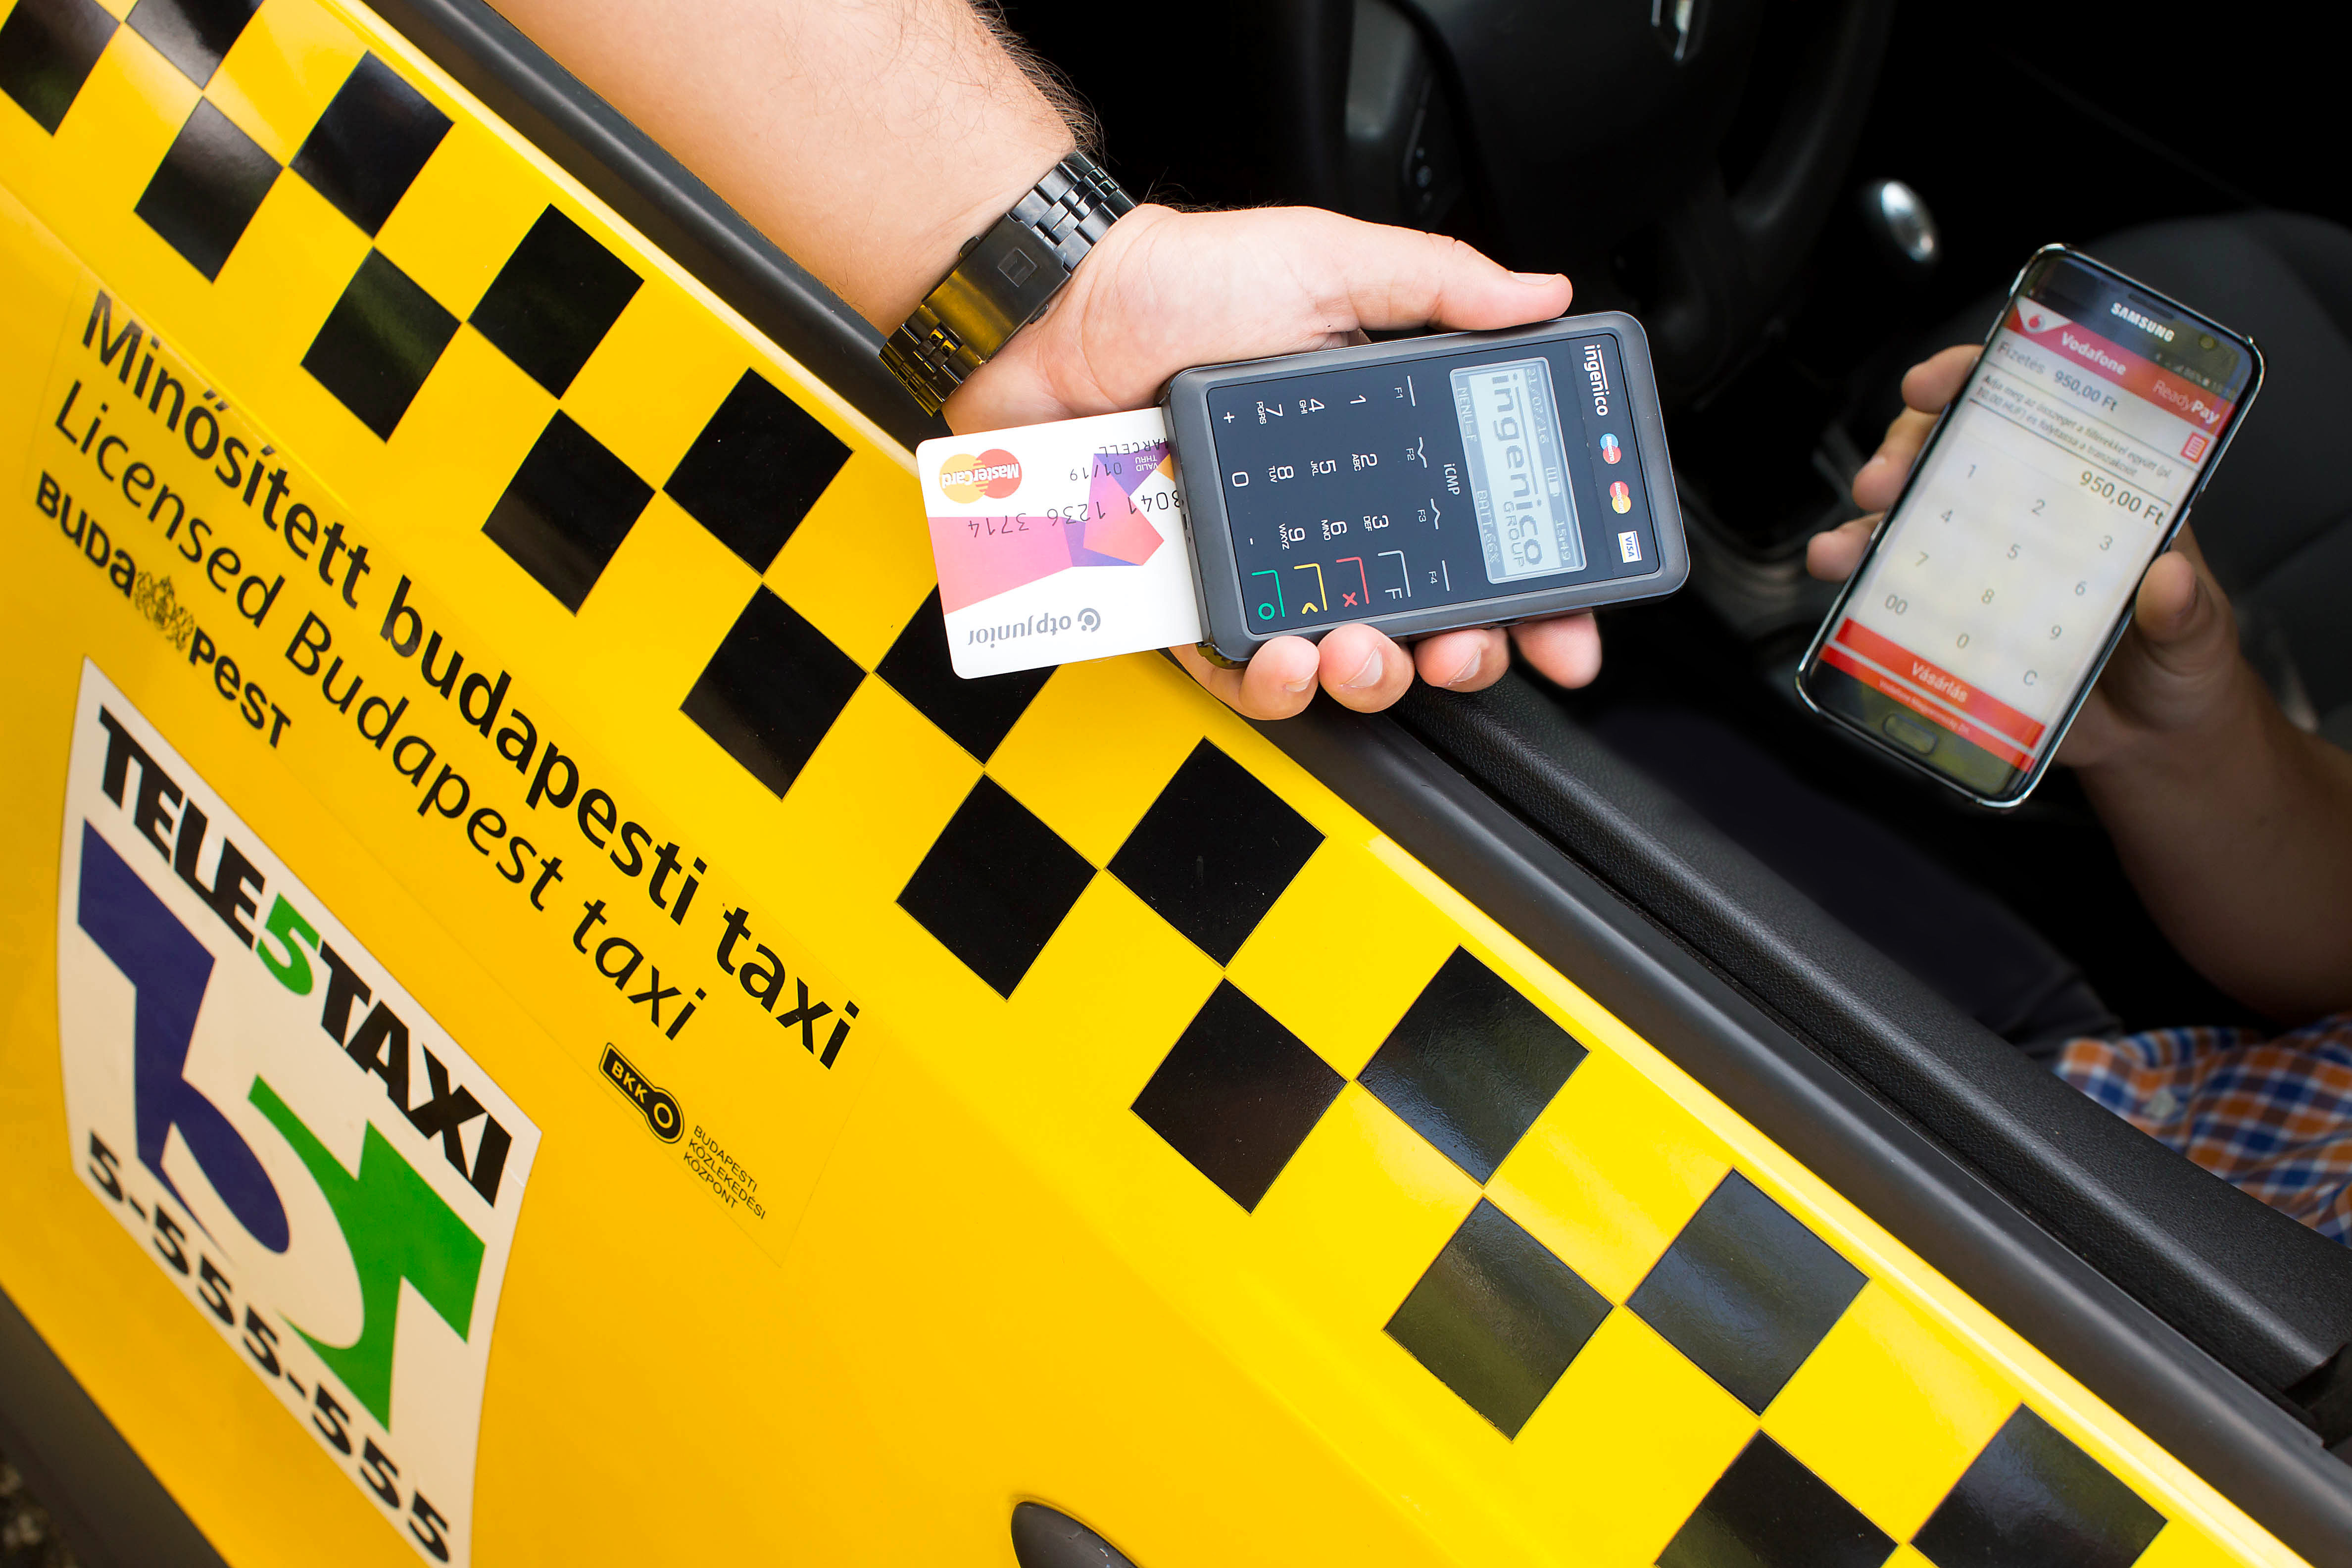 Vodafone ReadyPay mobil bankkártyás fizetés immár a Tele5 Taxinál is